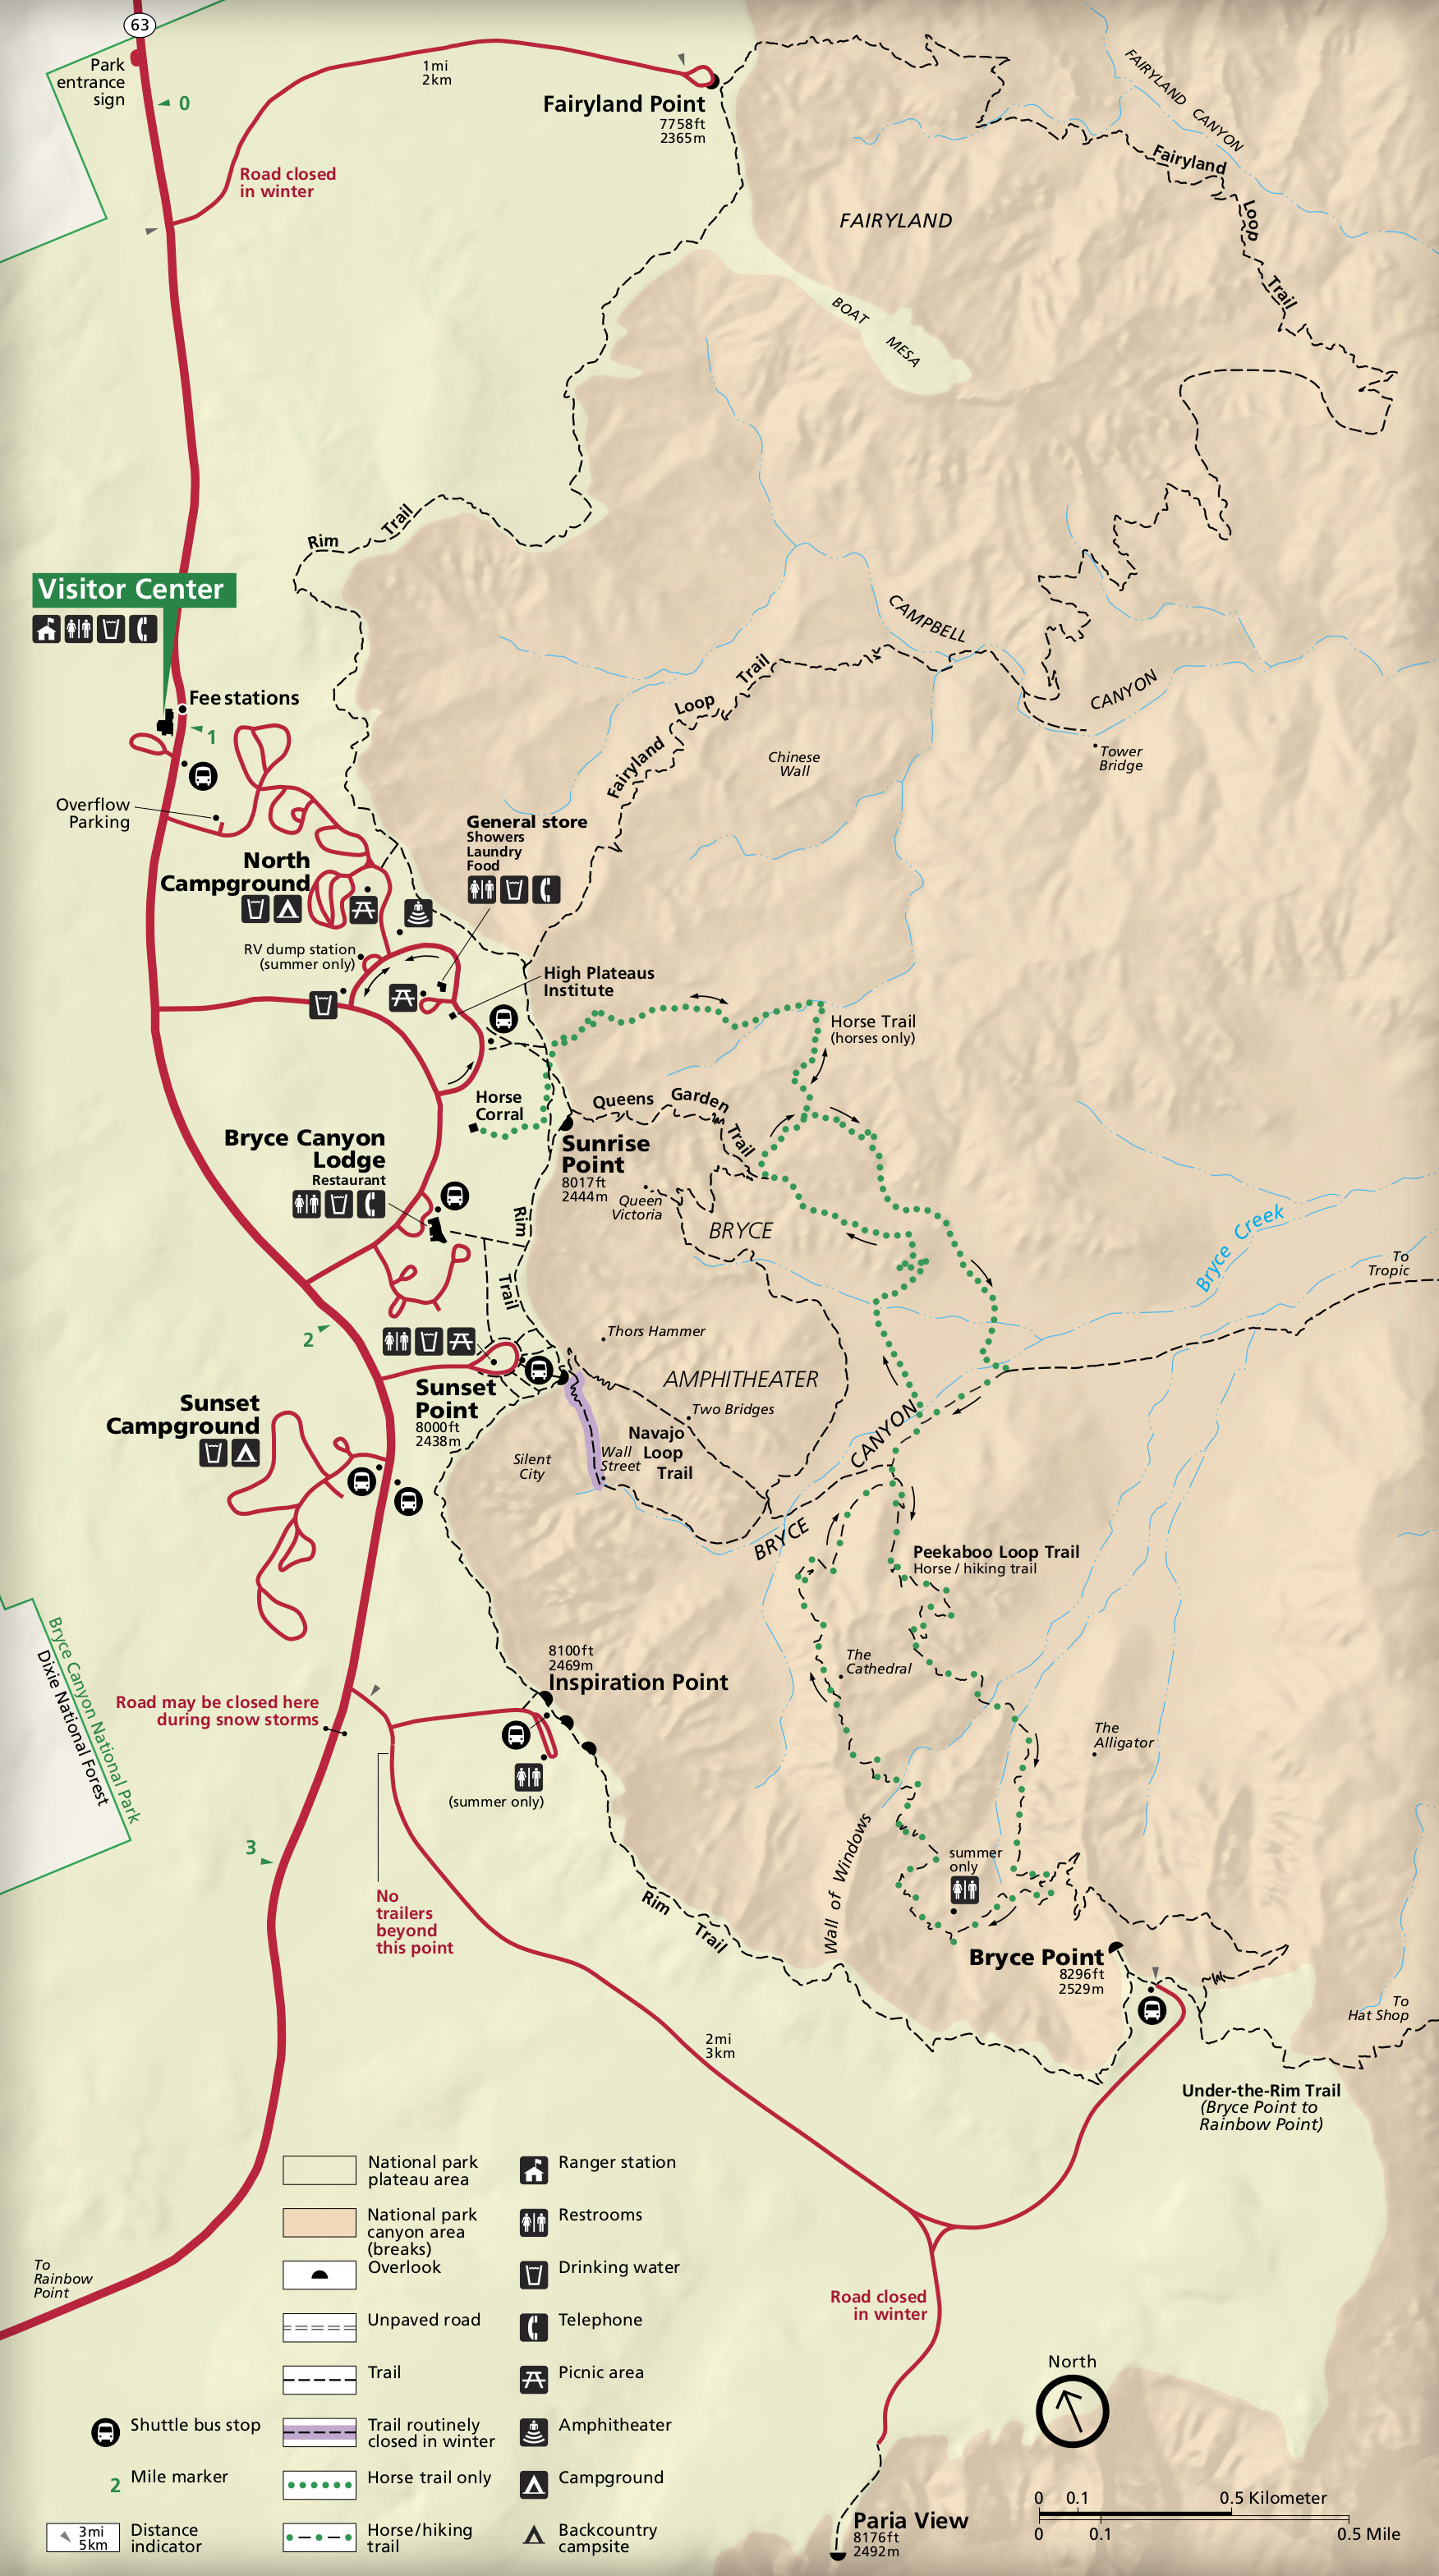 Bryce Canyon City Map